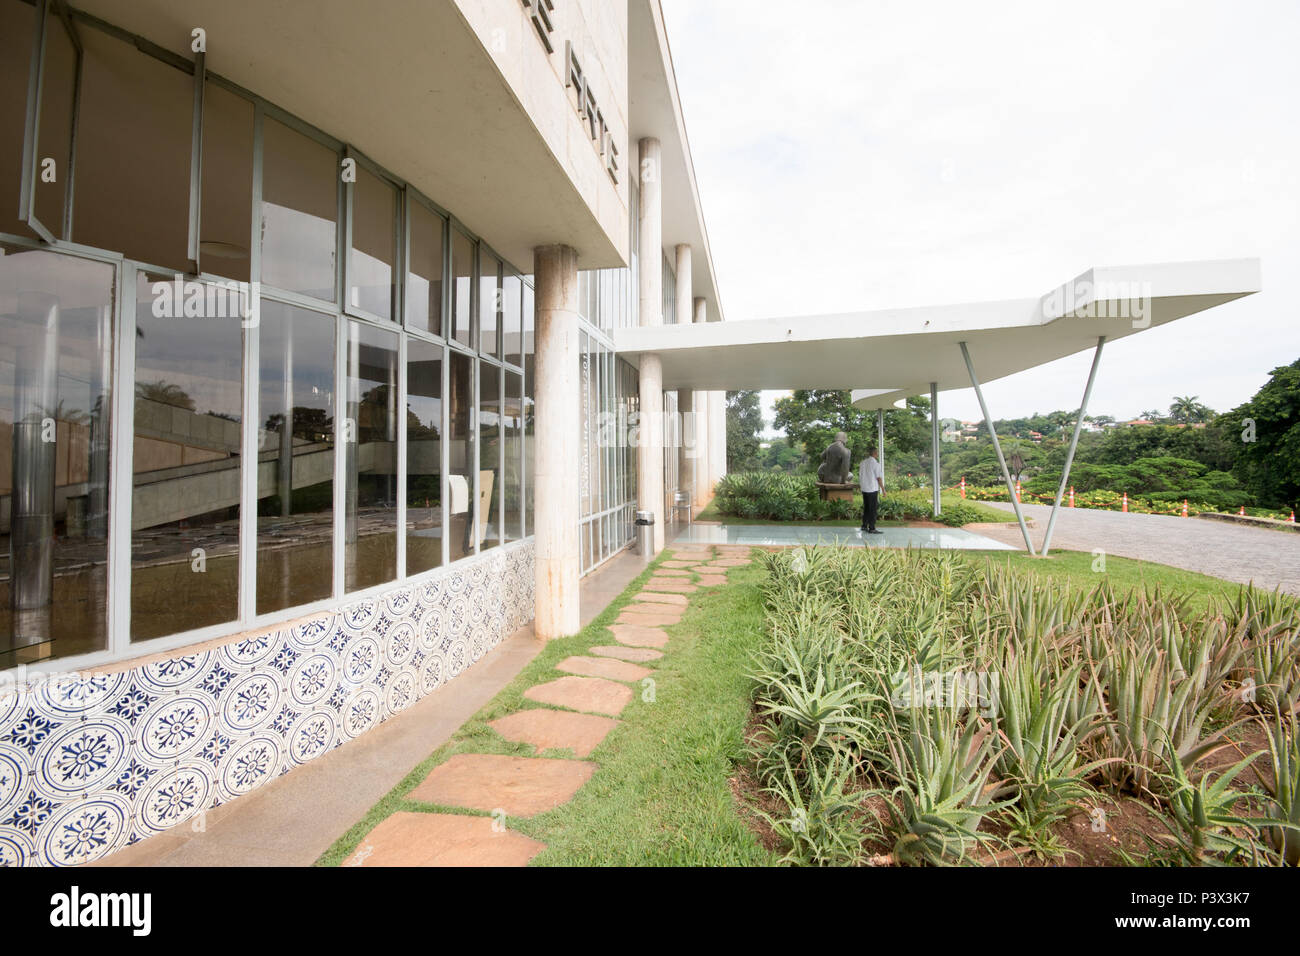 O Programa de Aceleração do Crescimento (PAC) completa 10 anos de lançamento em 2017. Na foto, o Museu de Artes da Pampulha, ainda aguardando as obras previstas, situada na cidade de Belo Horizonte. Stock Photo